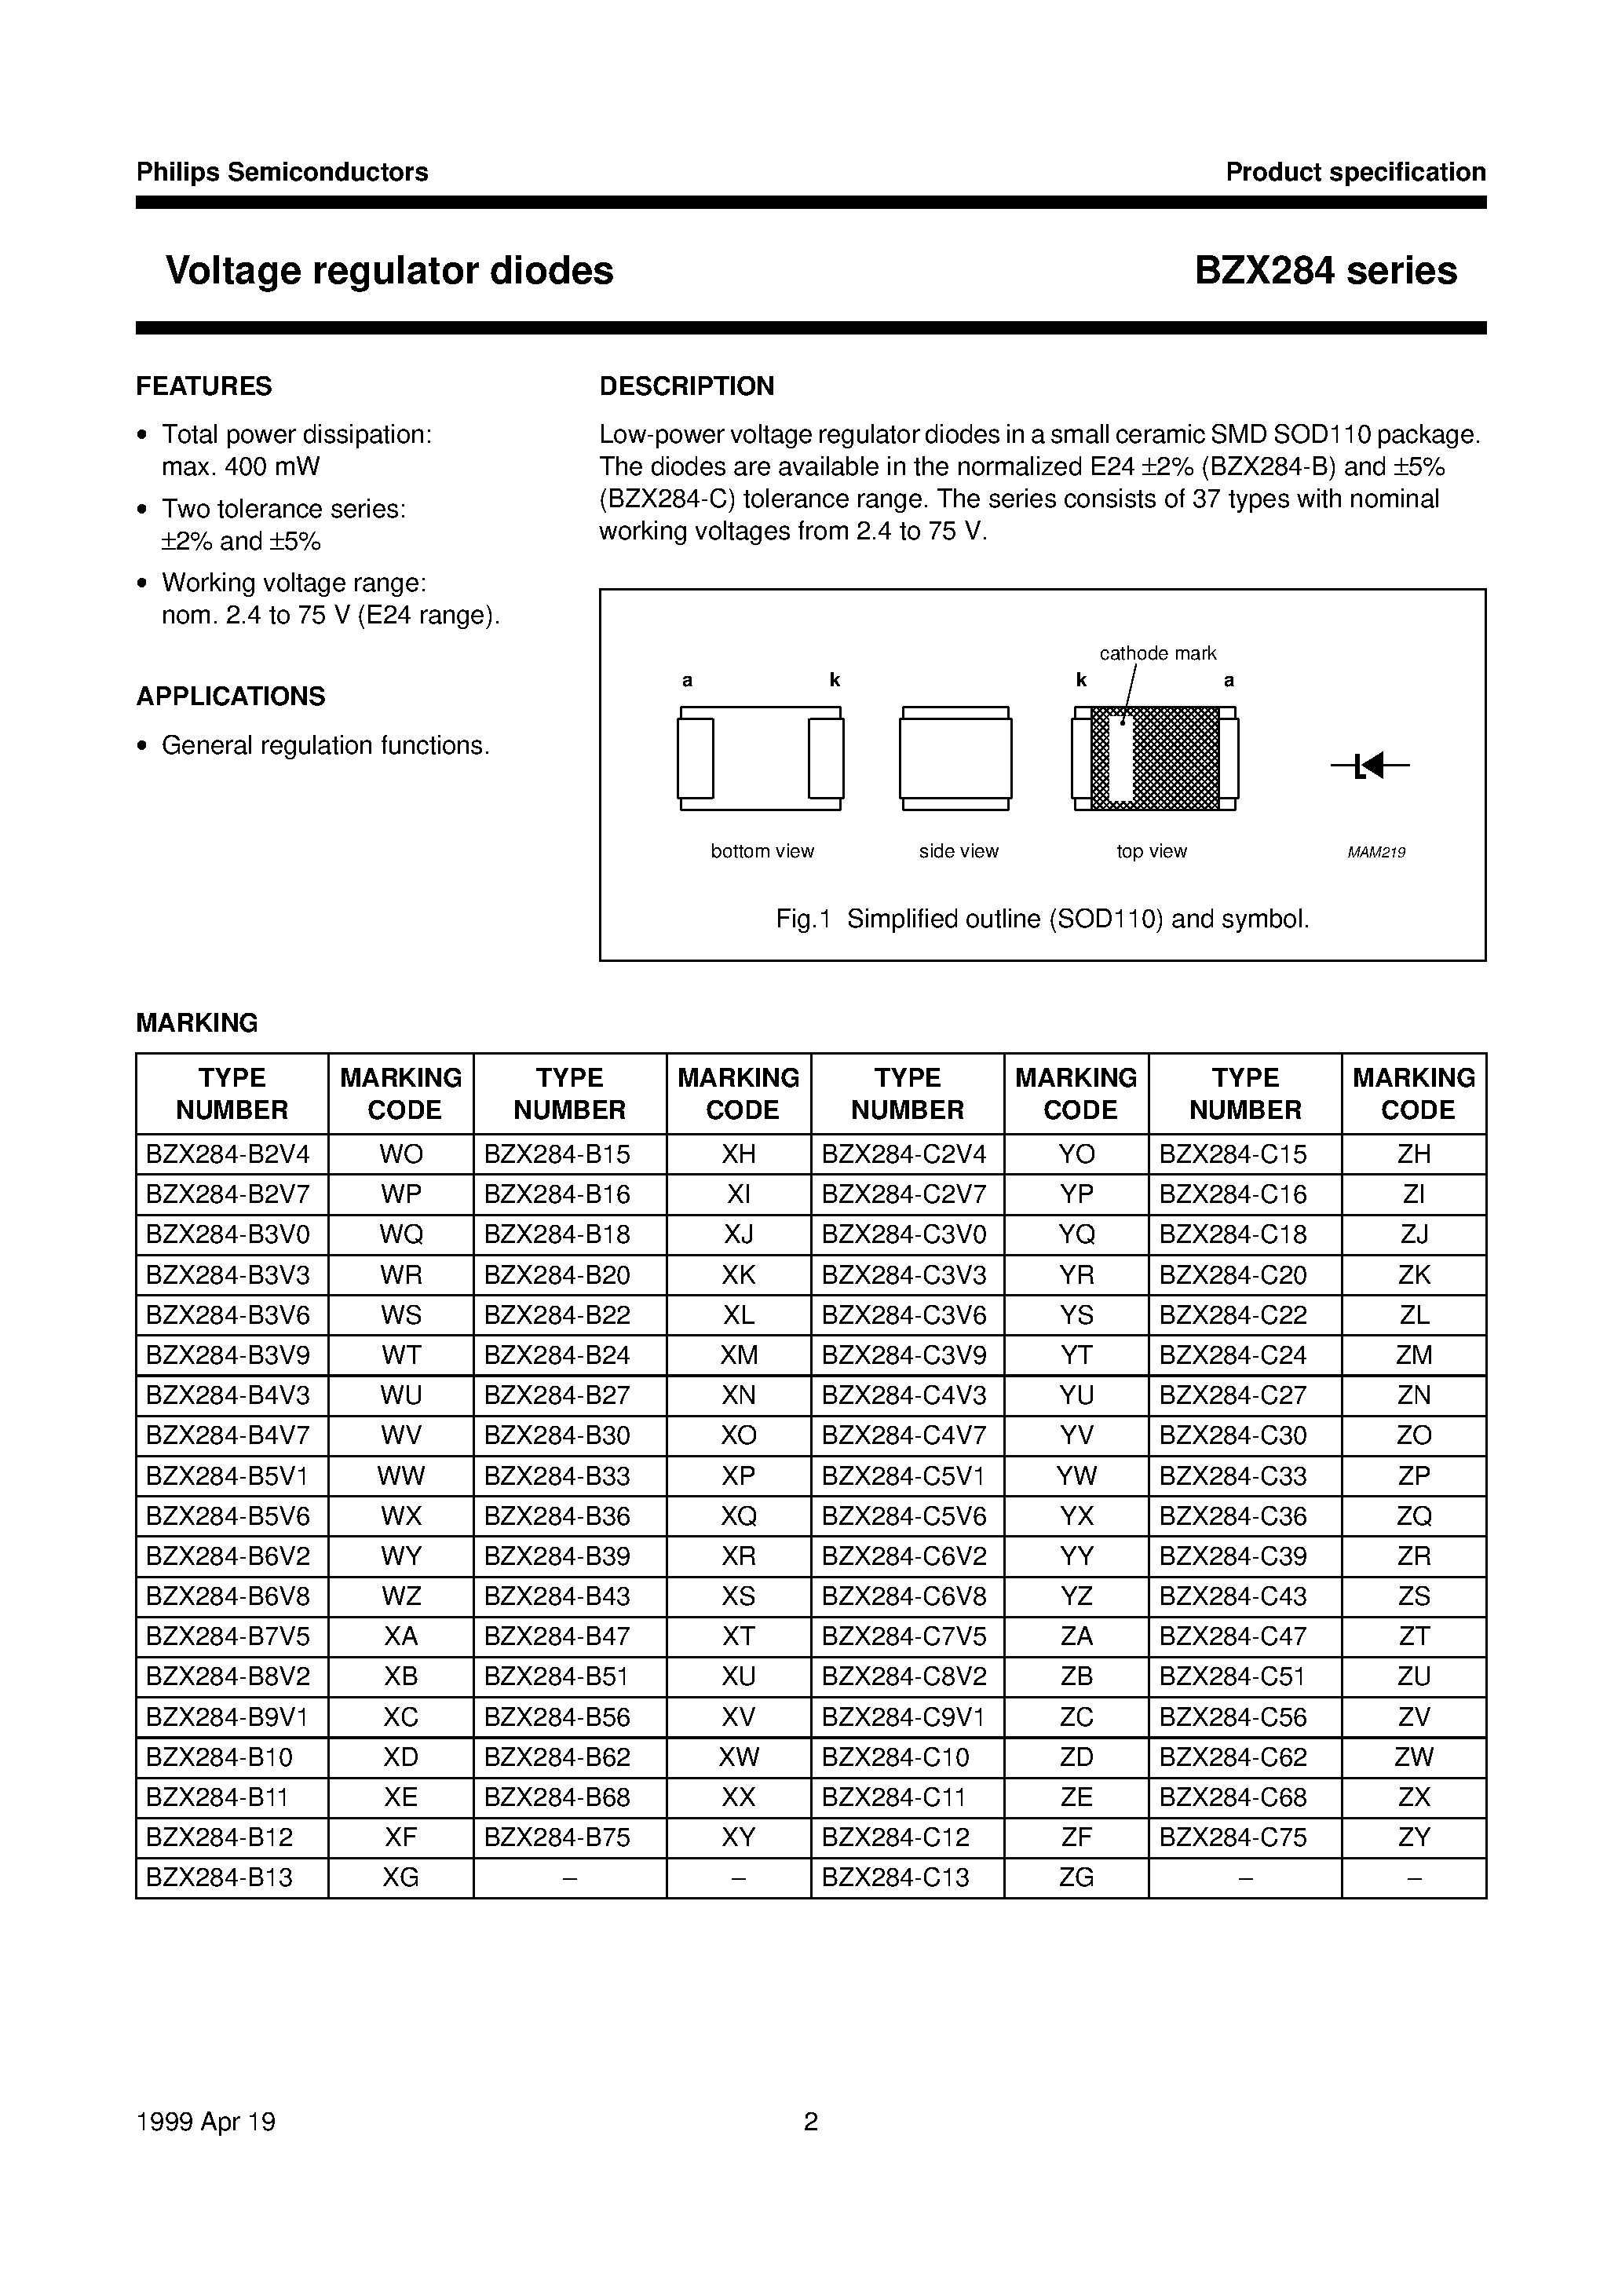 Даташит BZX284-B3V9 - Voltage regulator diodes страница 2